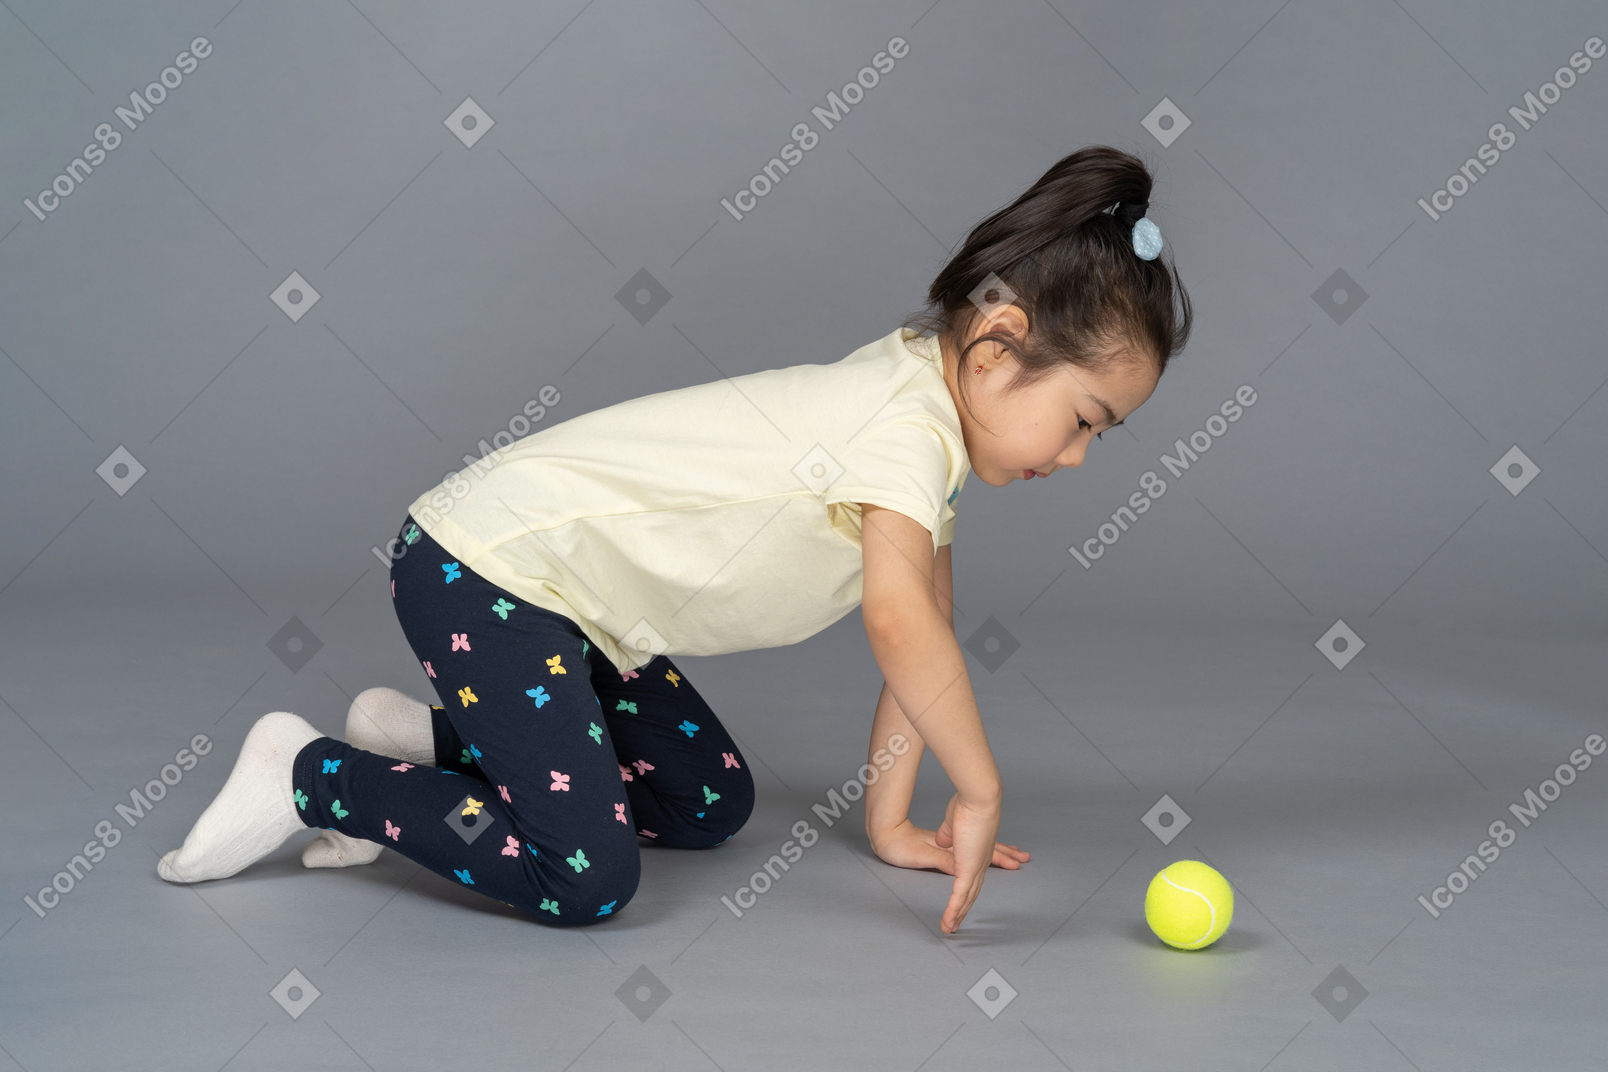 Девочка на четвереньках играет с теннисным мячом